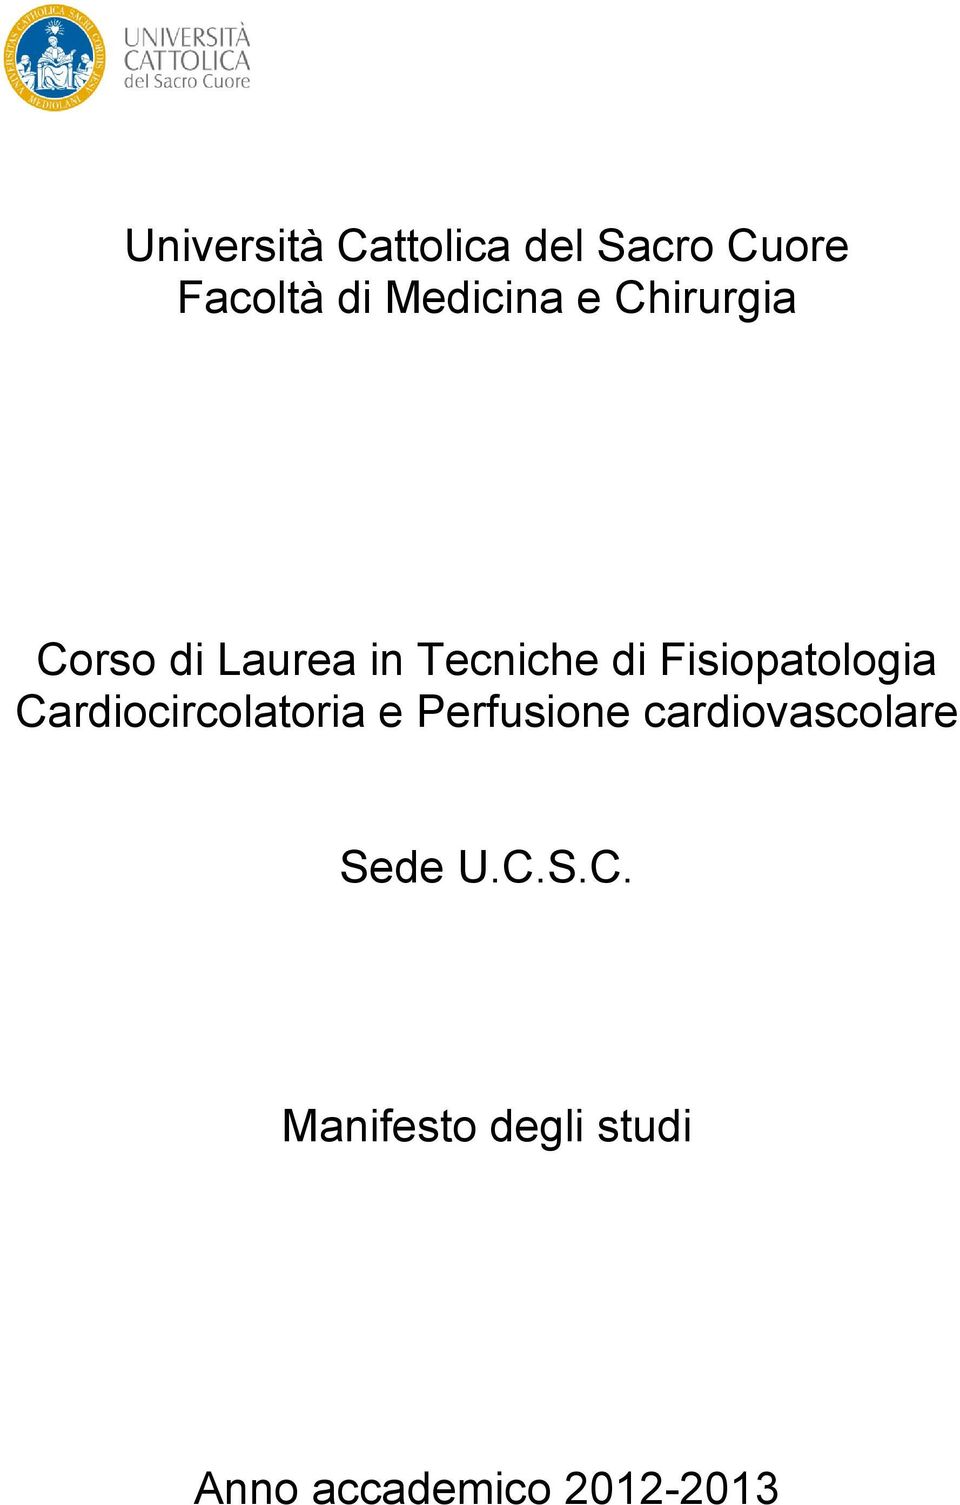 Cardiocircolatoria e Perfusione